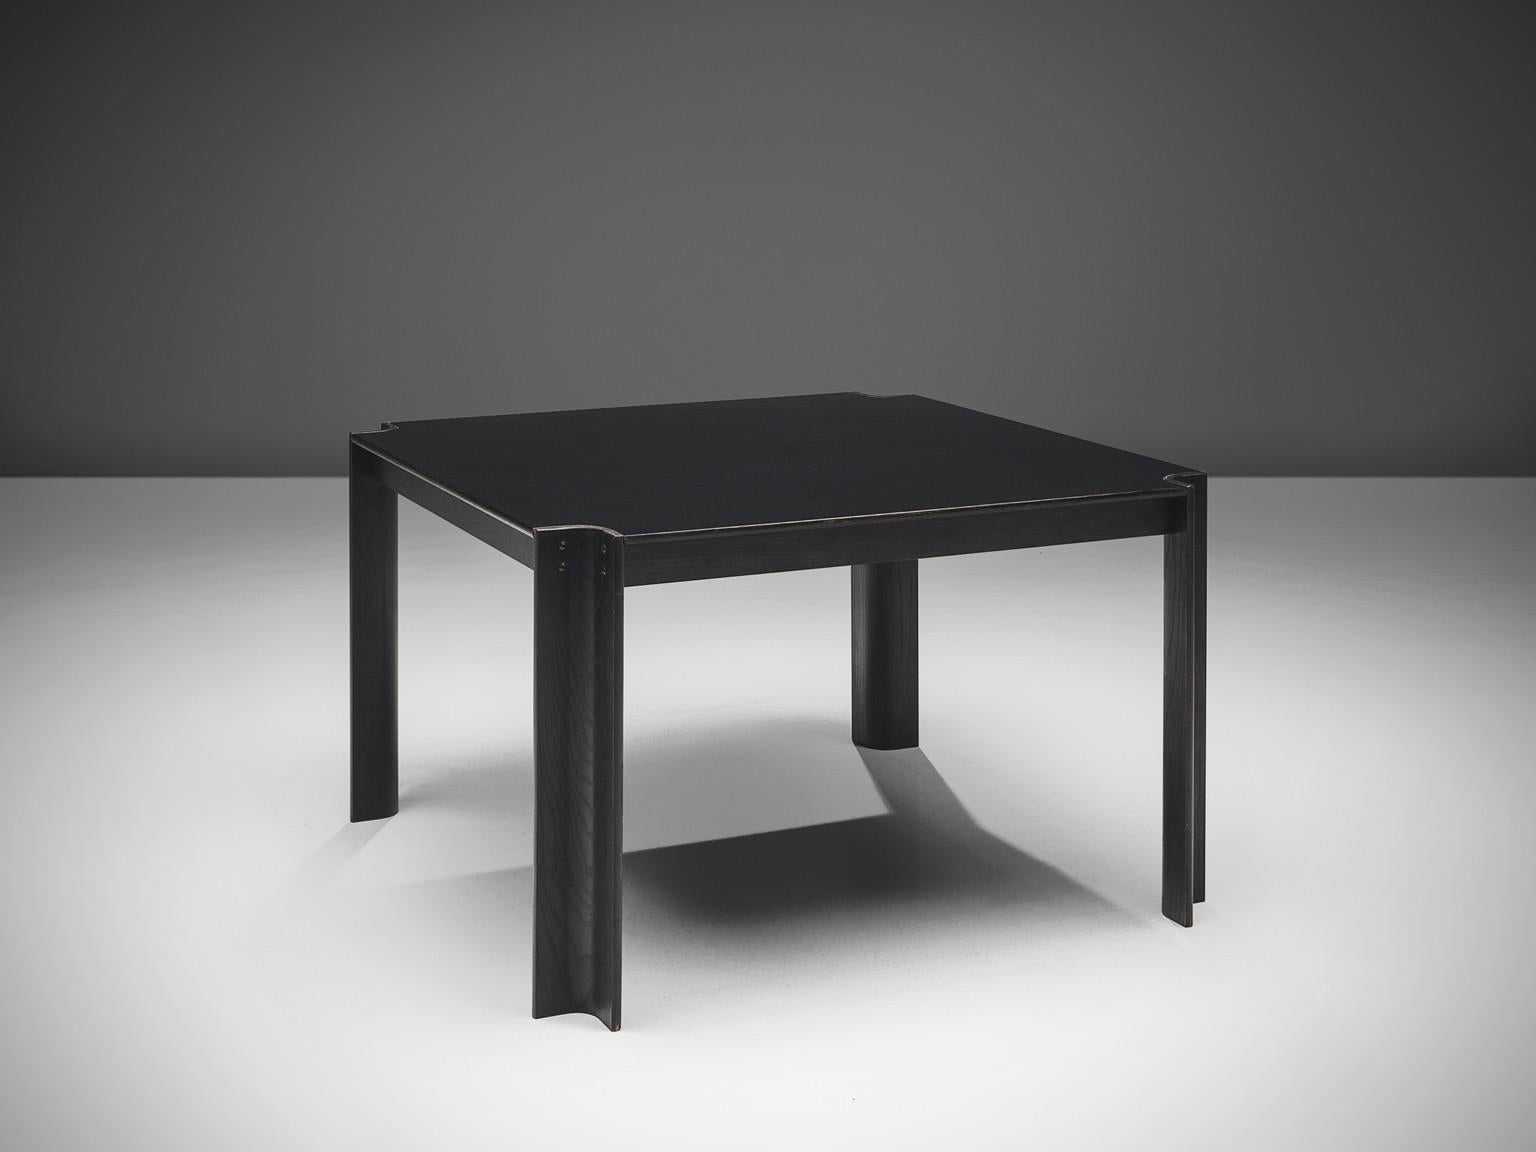 Gijs Bakker für Castelijn, Esstisch 'Strip', schwarz lackierte Esche, Niederlande, Entwurf 1974.

Dieser Tisch wurde von dem niederländischen Möbel- und Schmuckdesigner Gijs Bakker entworfen. Der Esstisch wurde 1974 entworfen und zeichnet sich durch